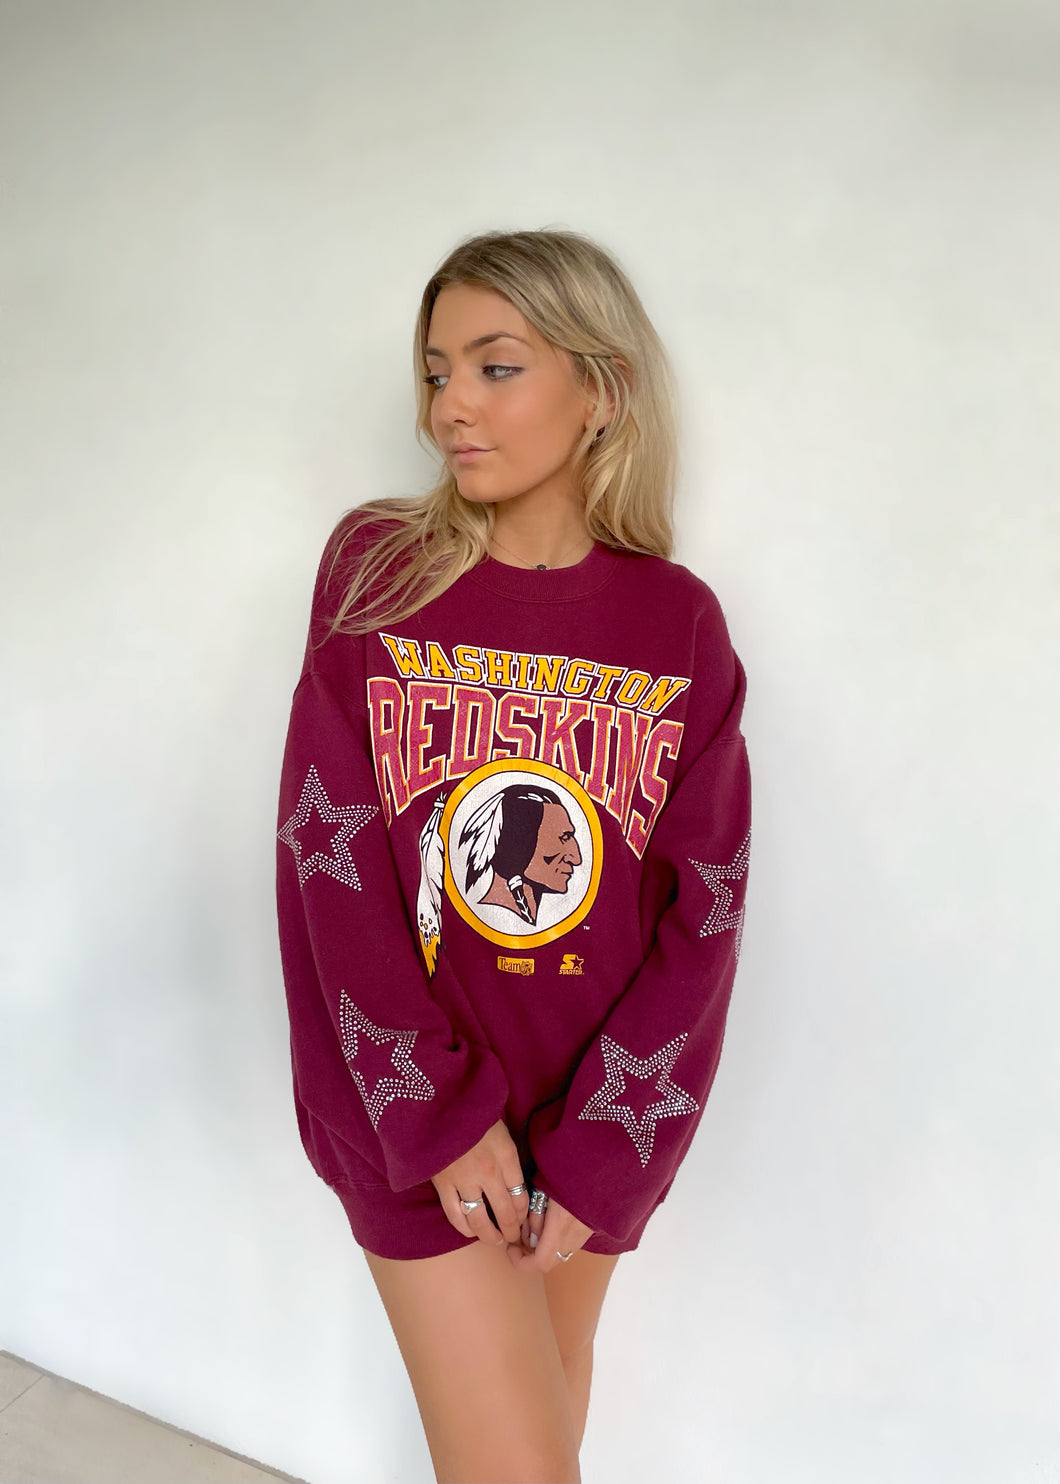 Washington Redskins, NFL One of a KIND Vintage Sweatshirt with Starburst Crystal Star Design